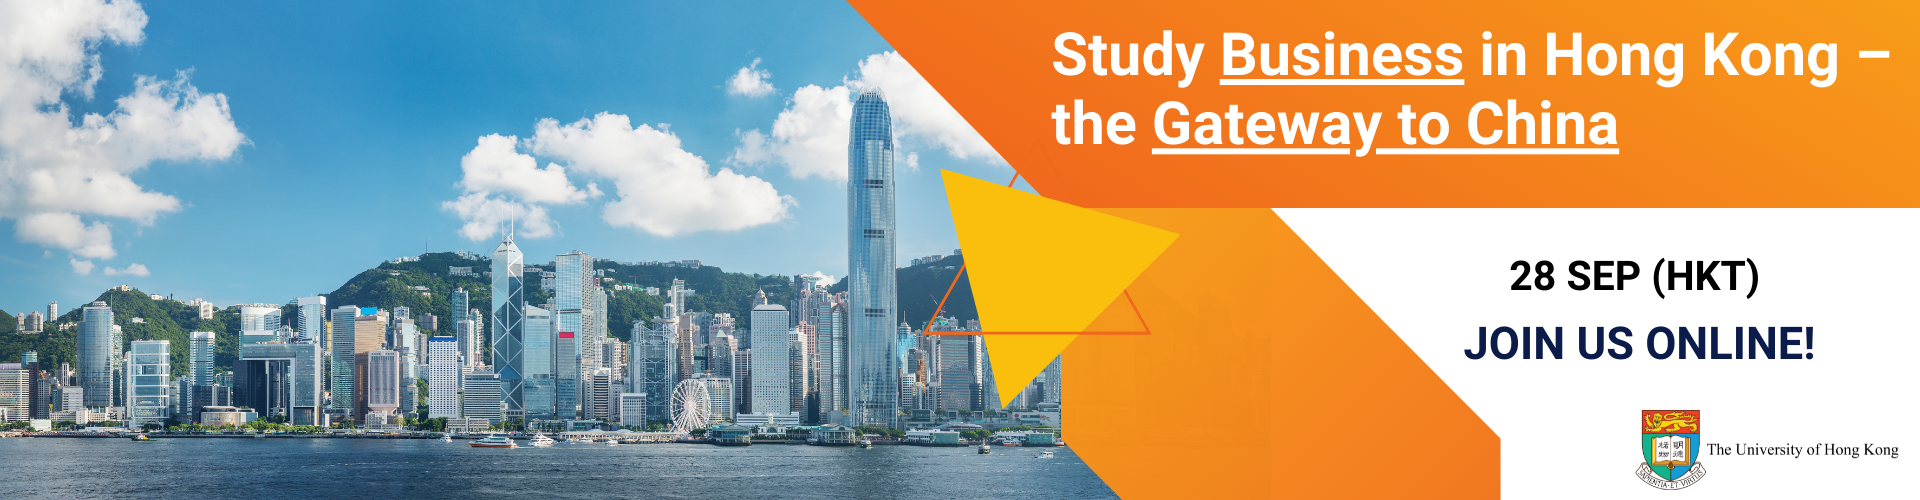 动画文本"Study Business in Hong Kong - the Gateway to China Join Us On 28 September" with photos of Hong Kong harbour